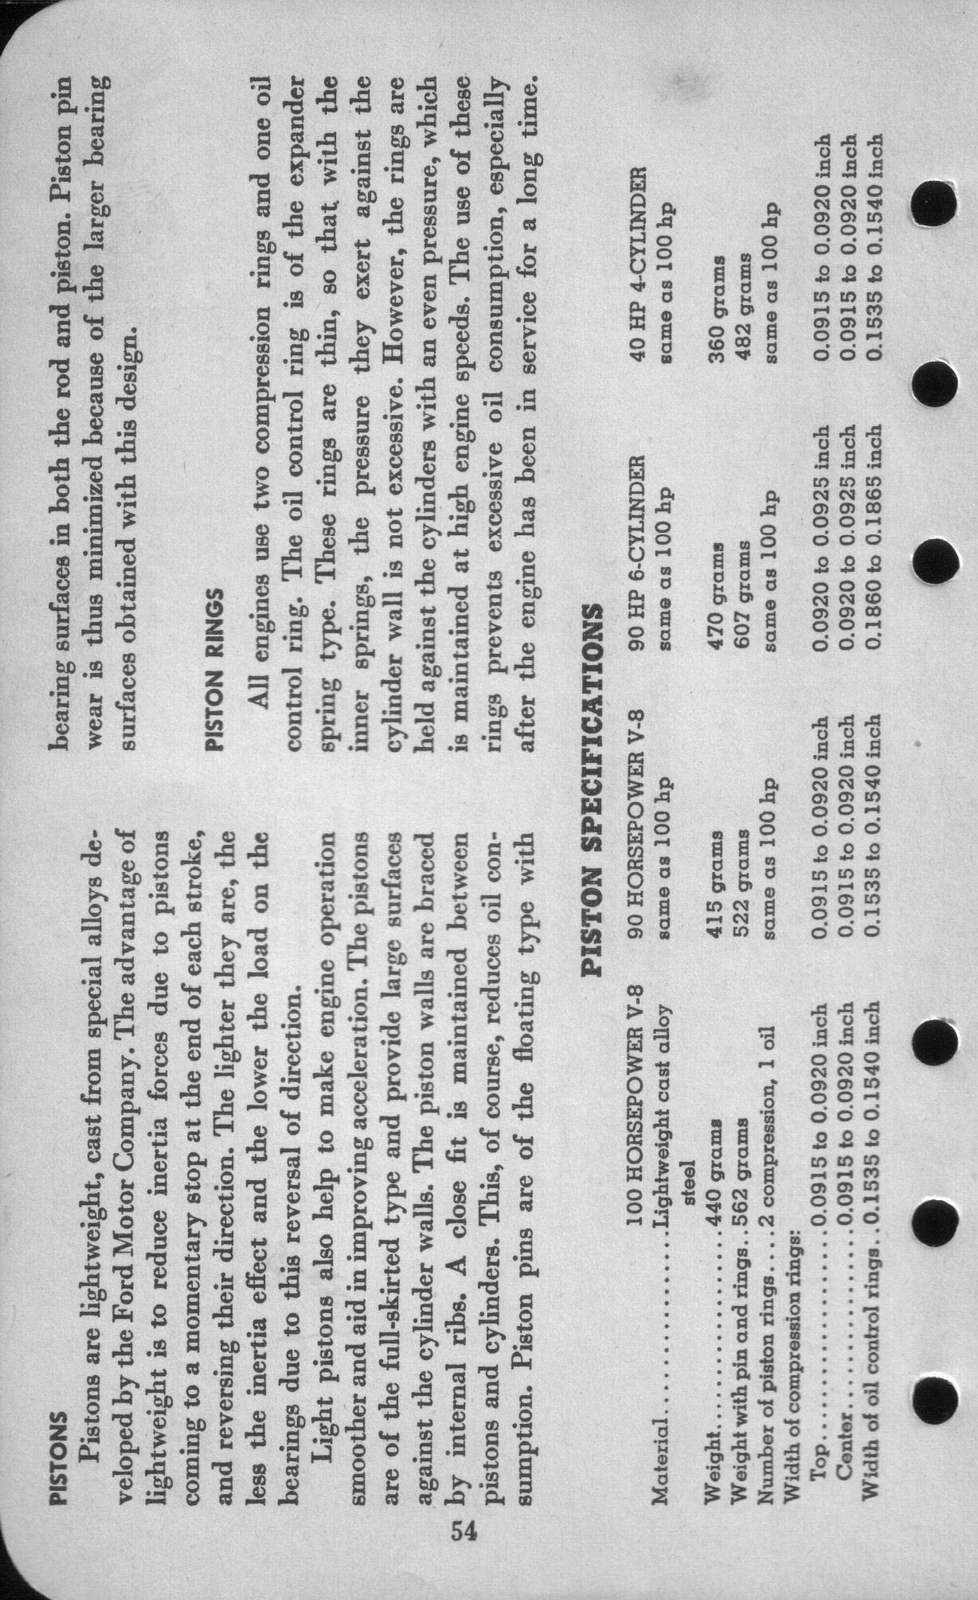 n_1942 Ford Salesmans Reference Manual-054.jpg